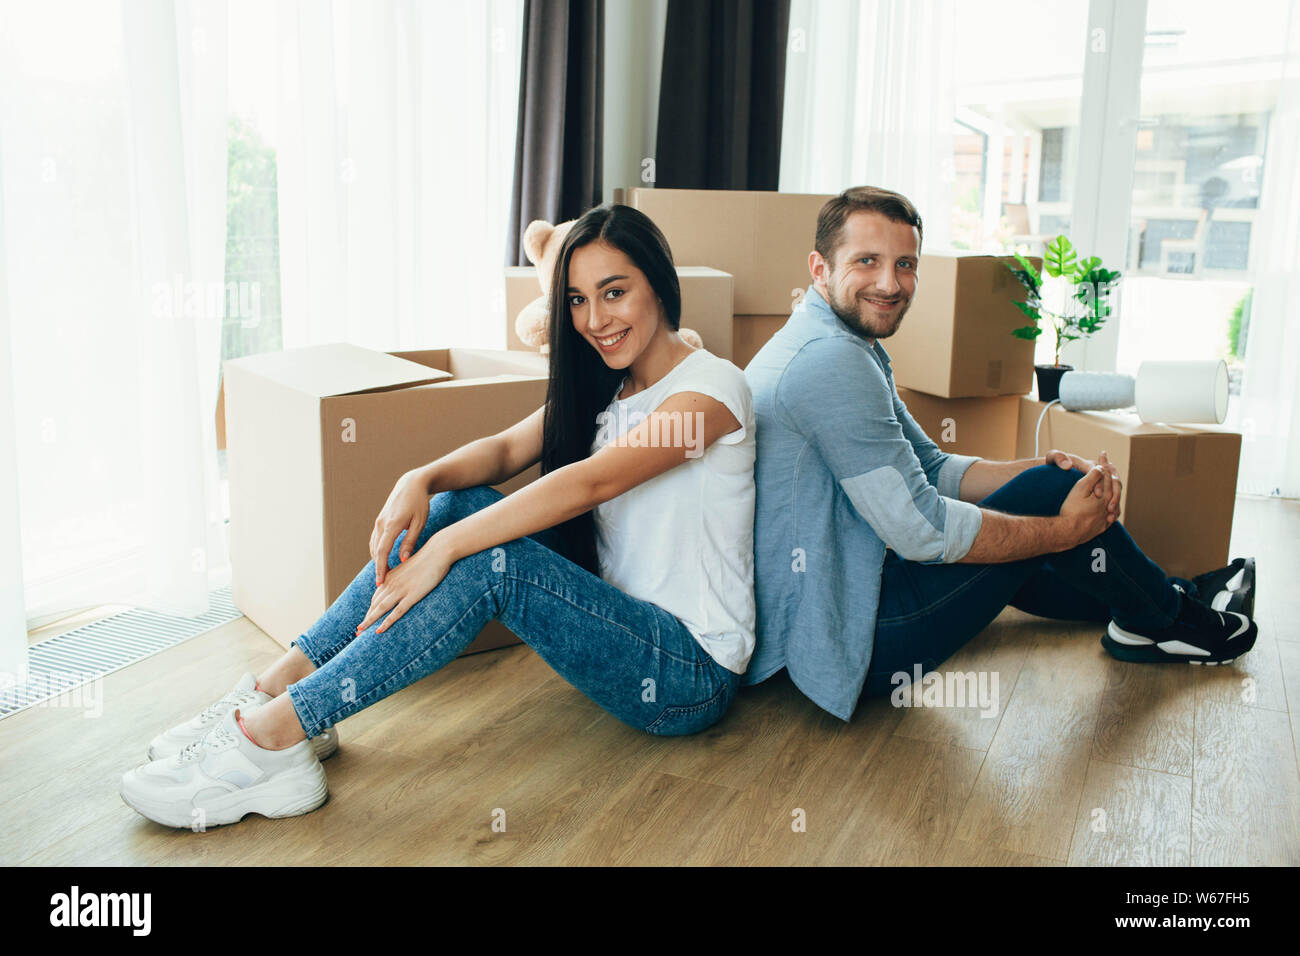 Déménagement nouvelle maison. Jeune couple heureux de déballer les cartons dans leur nouvel appartement Banque D'Images